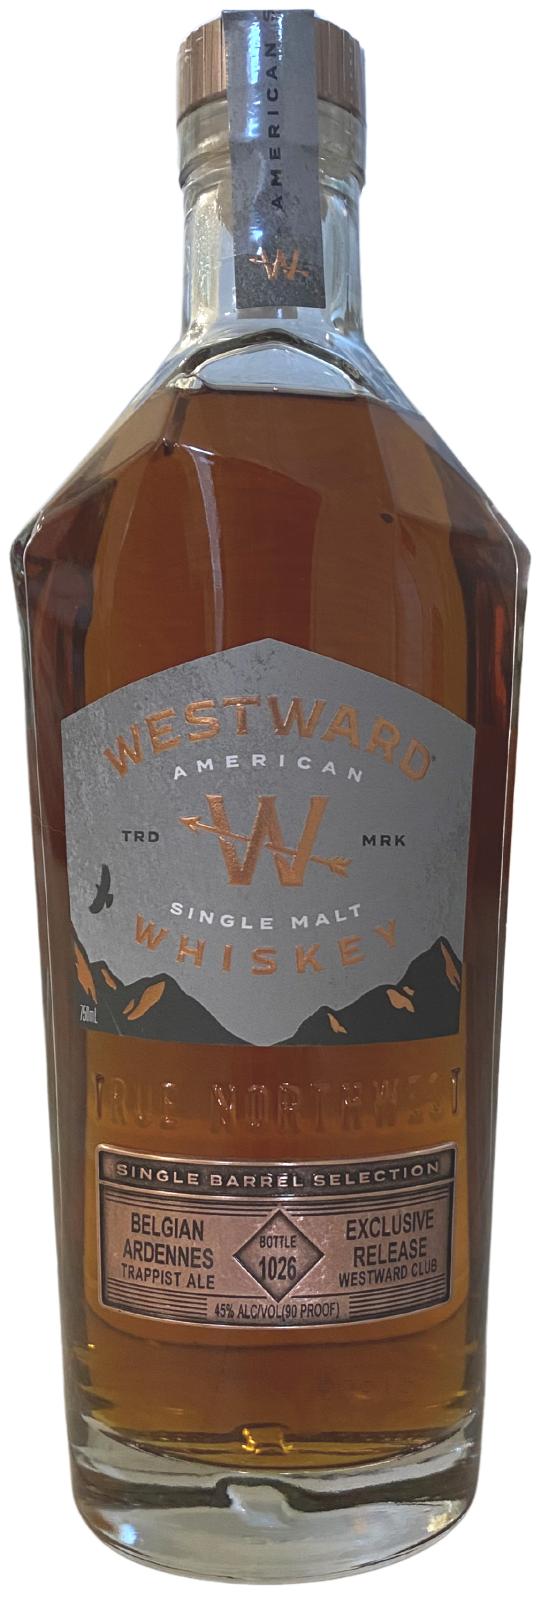 Westward Belgian Ardennes Trappist Ale 45% 750ml